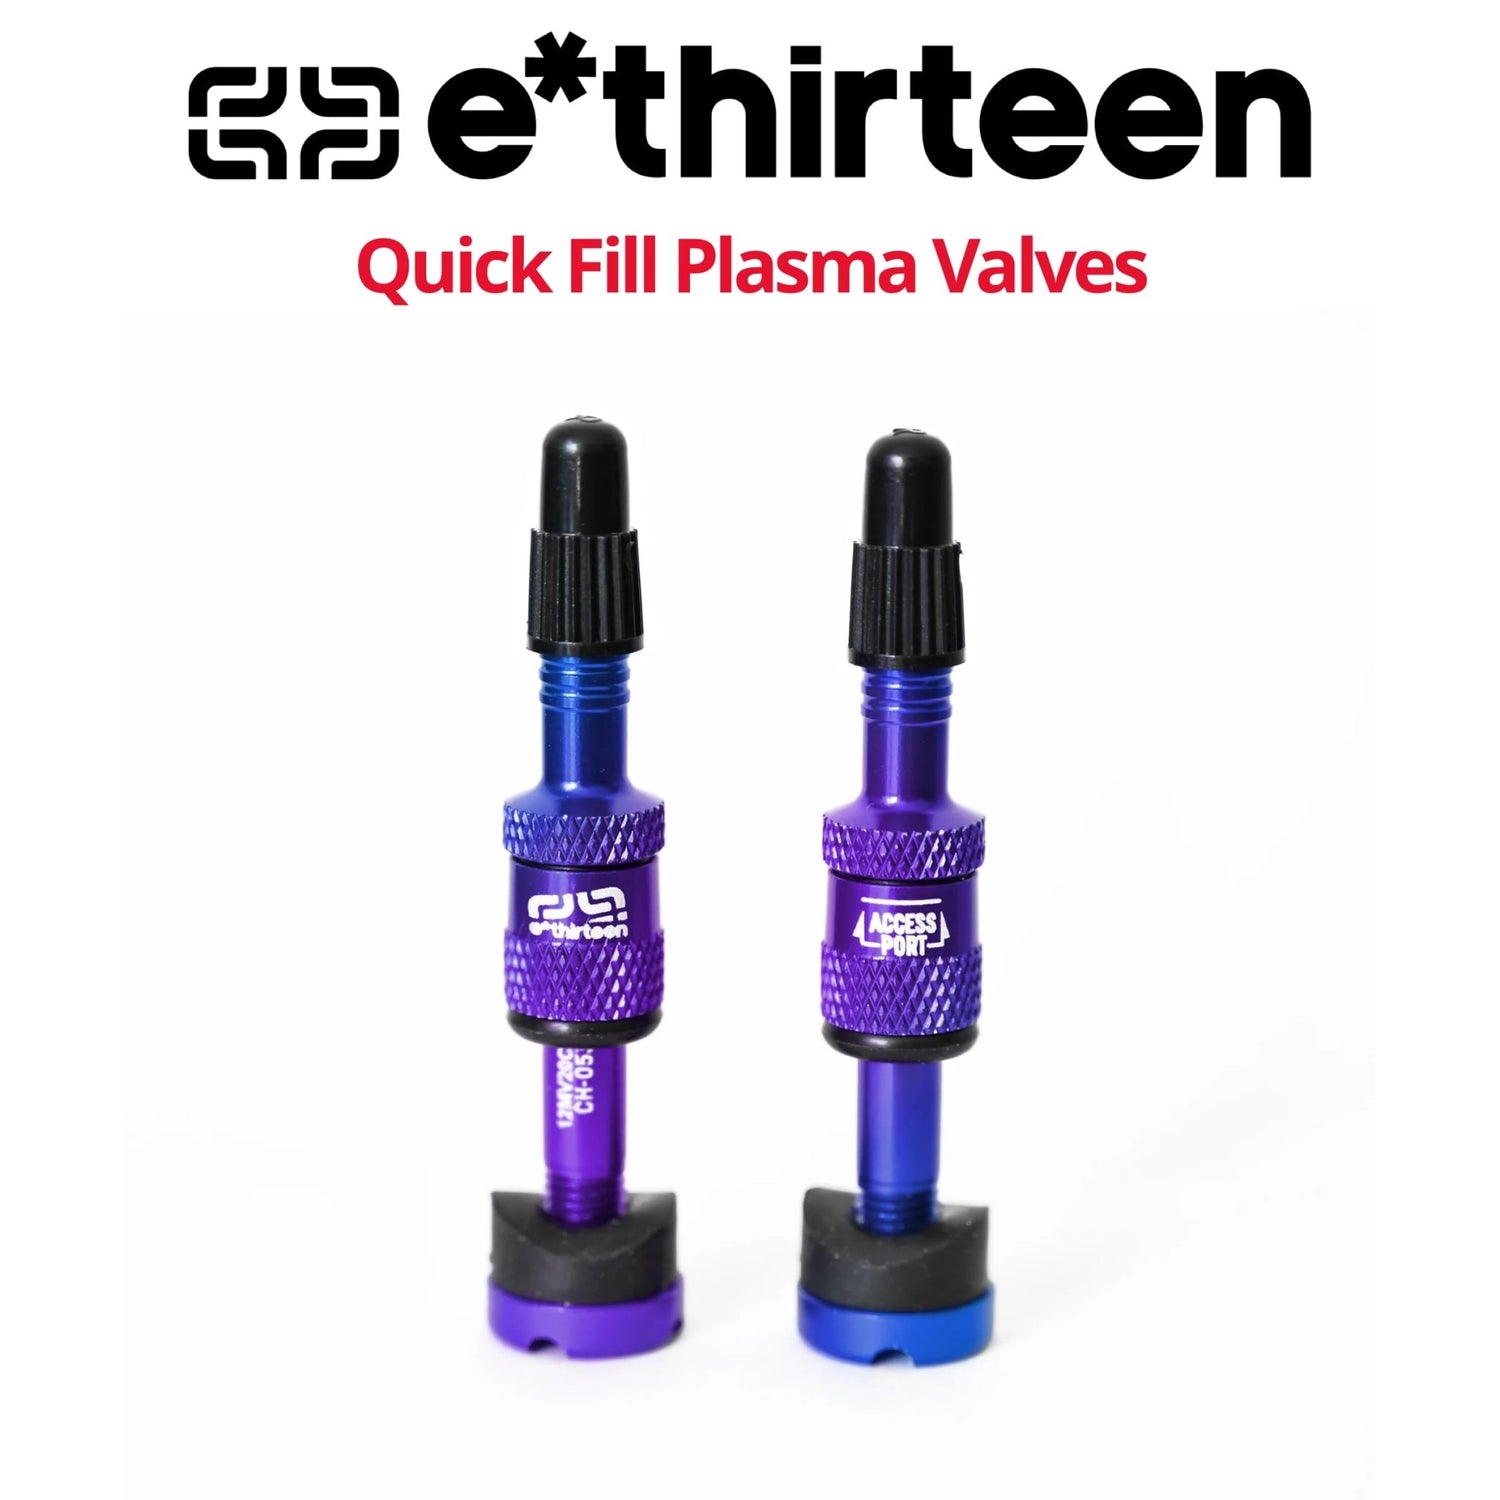 E13 Quickfill Tubeless Valves Gen2, 2 pieces